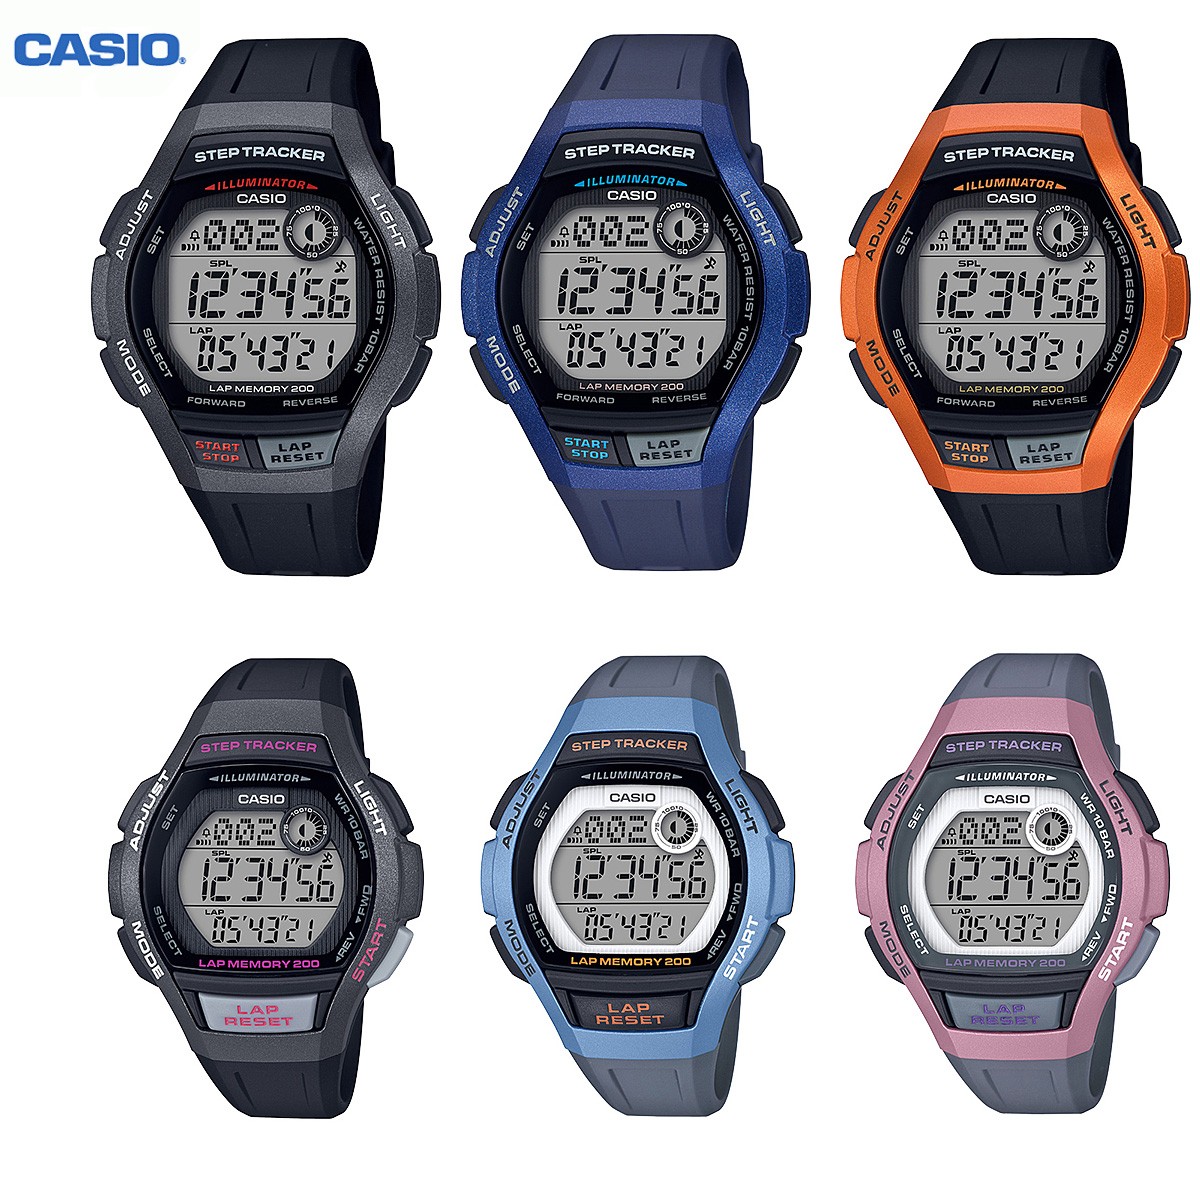 カシオ CASIO WS-2000H LWS-2000H 歩数計 メンズ レディース キッズ 腕時計 ランニングウォッチ  :ca-ws-2000h-lws-2000h:腕時計の038net - 通販 - Yahoo!ショッピング